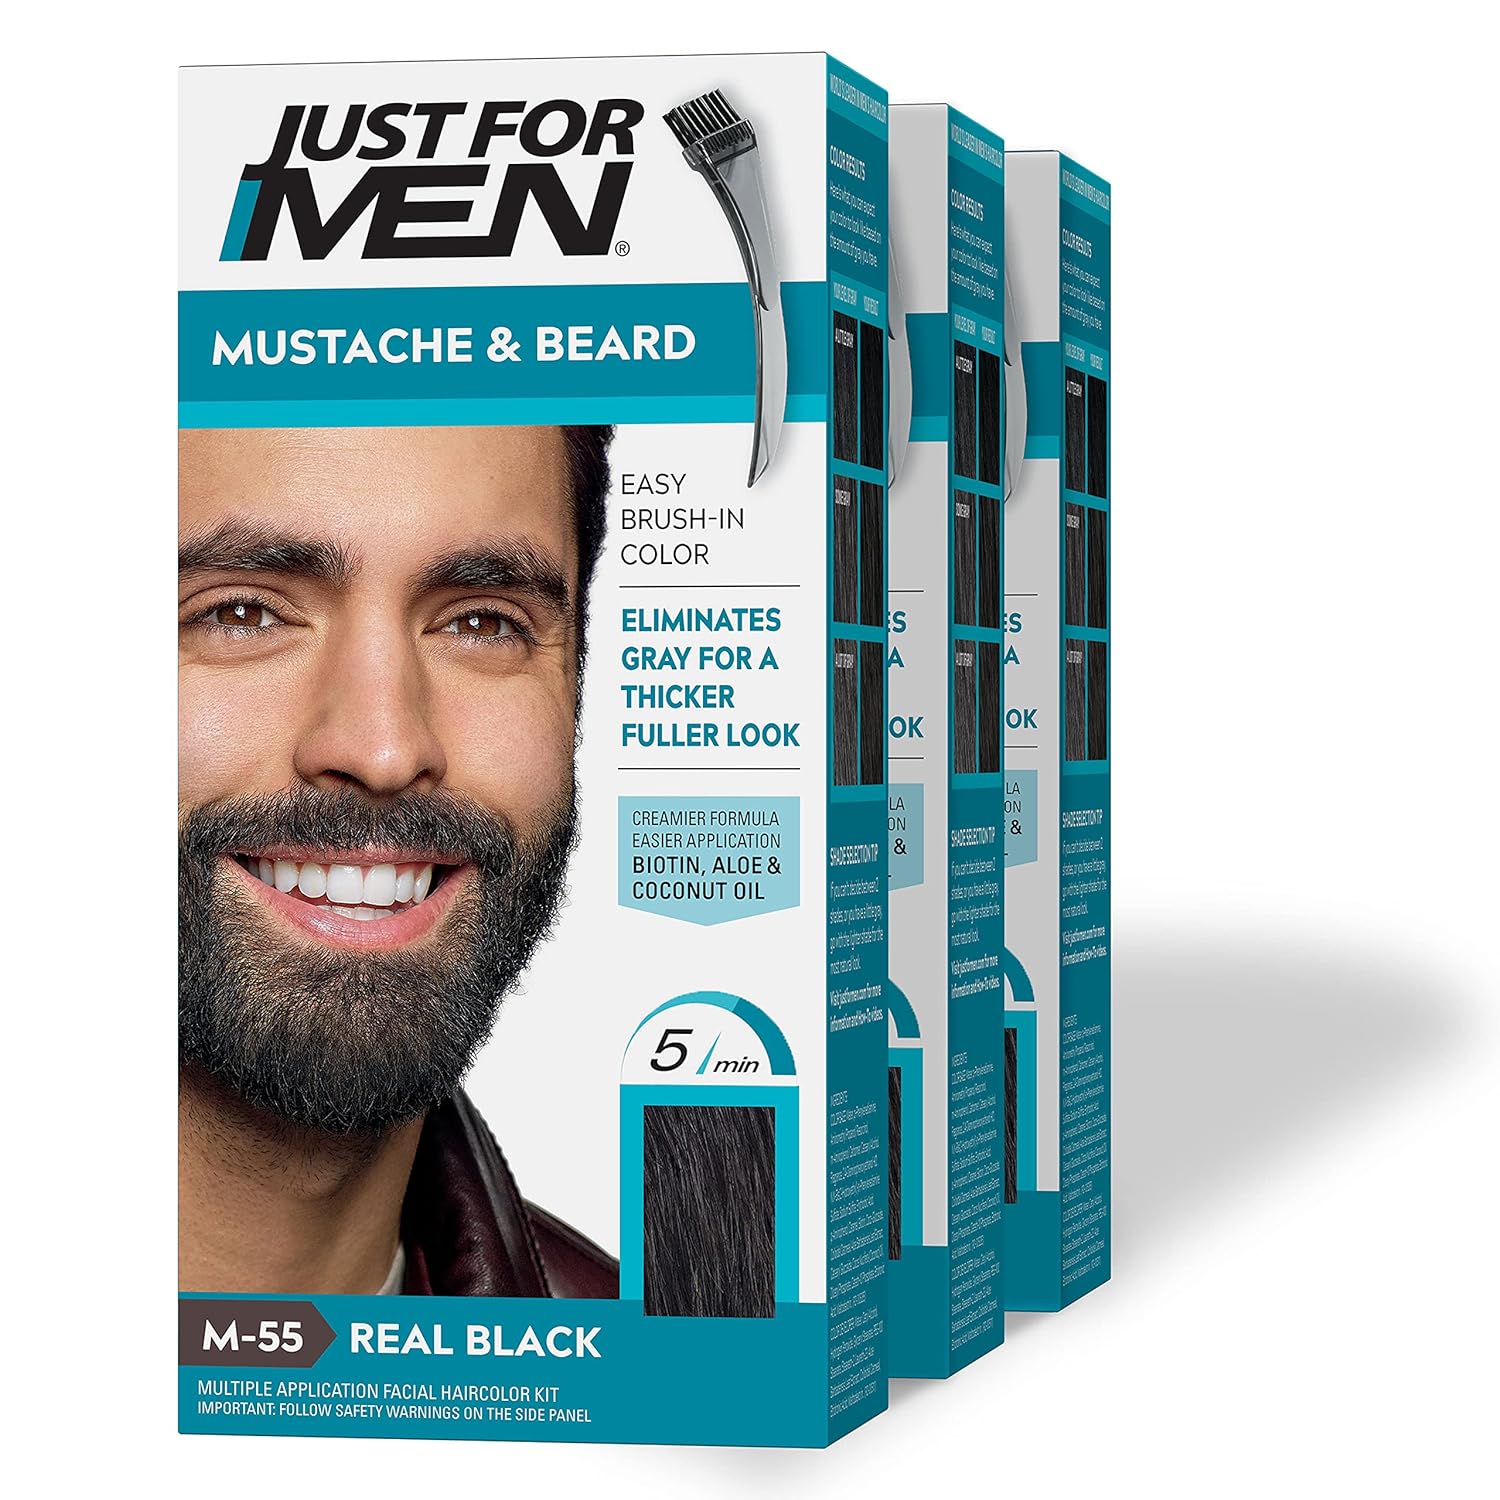 Just For Men Mustache & Beard, Beard Coloring for G